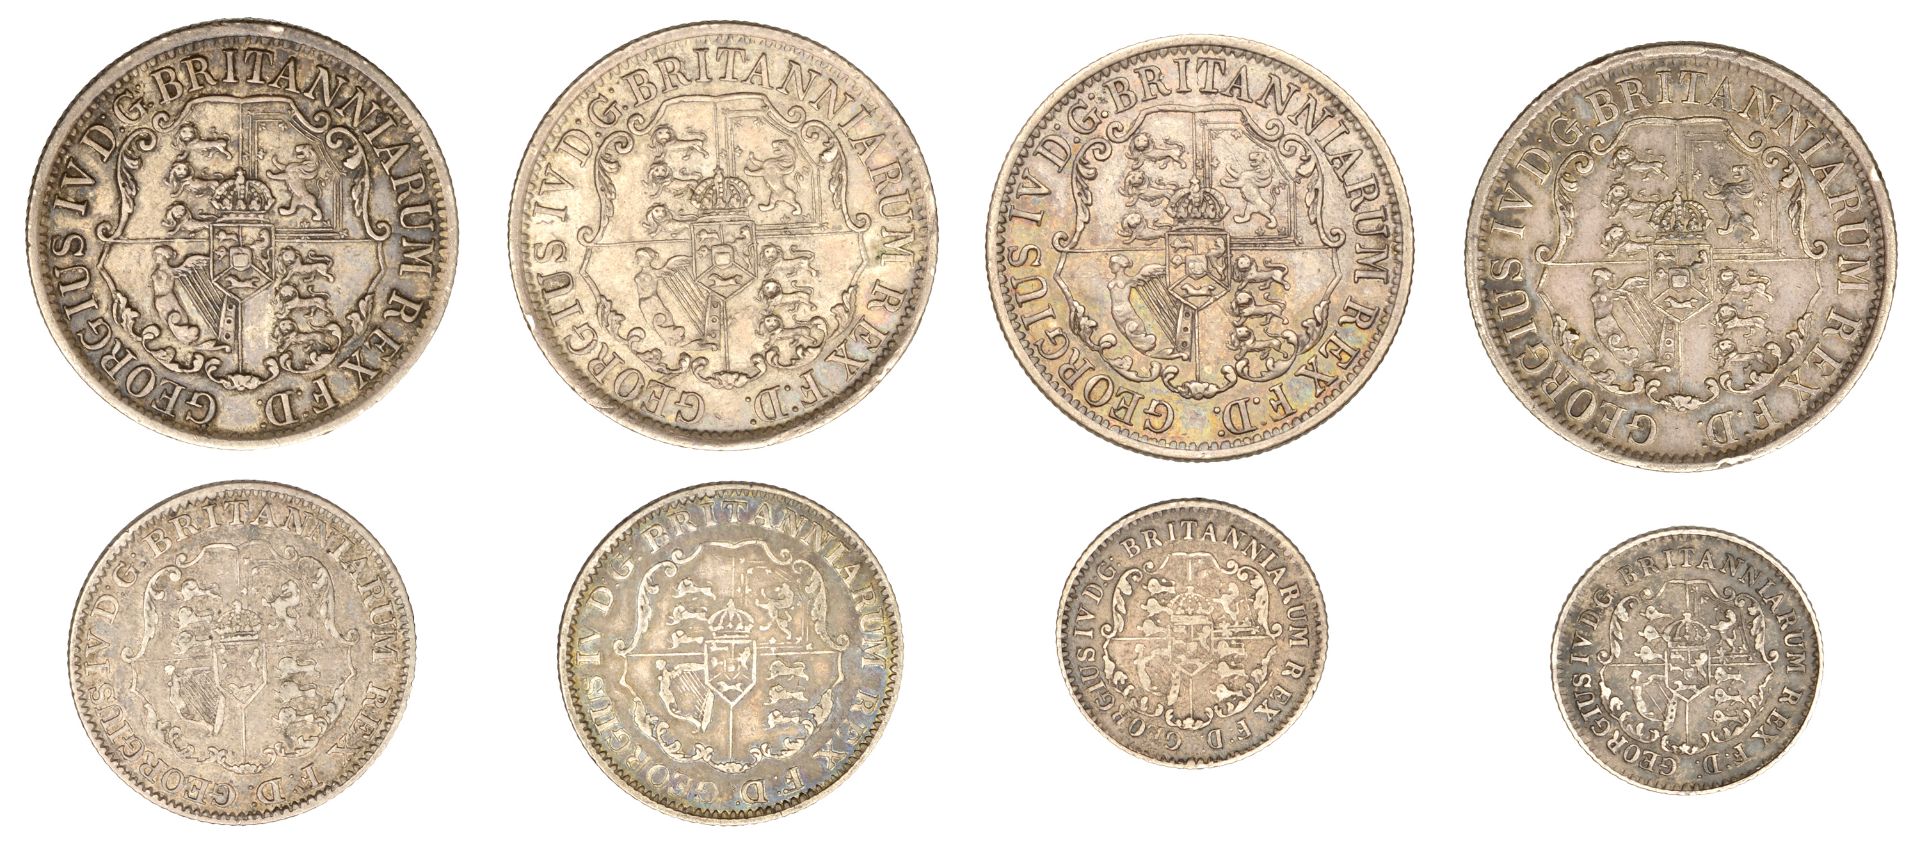 British Colonies, George IV, Anchor money, Quarter-Dollars (4), 1820, 1822 (3) (Prid. 9-10;... - Bild 2 aus 2